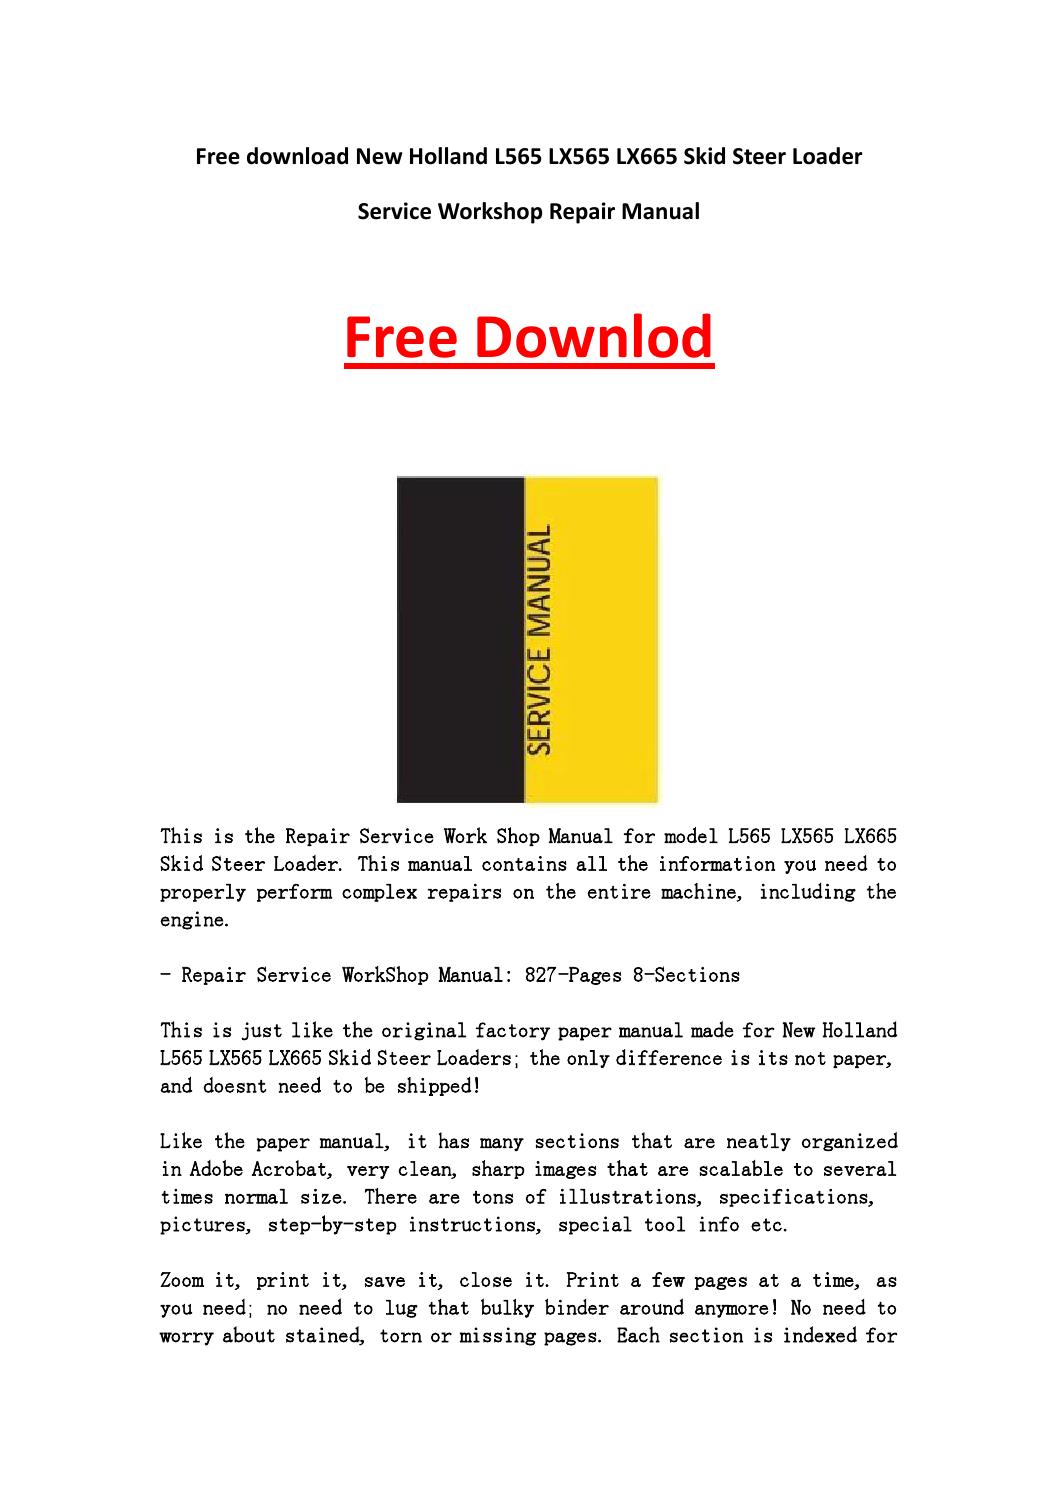 New Holland Repair Manual Free Download